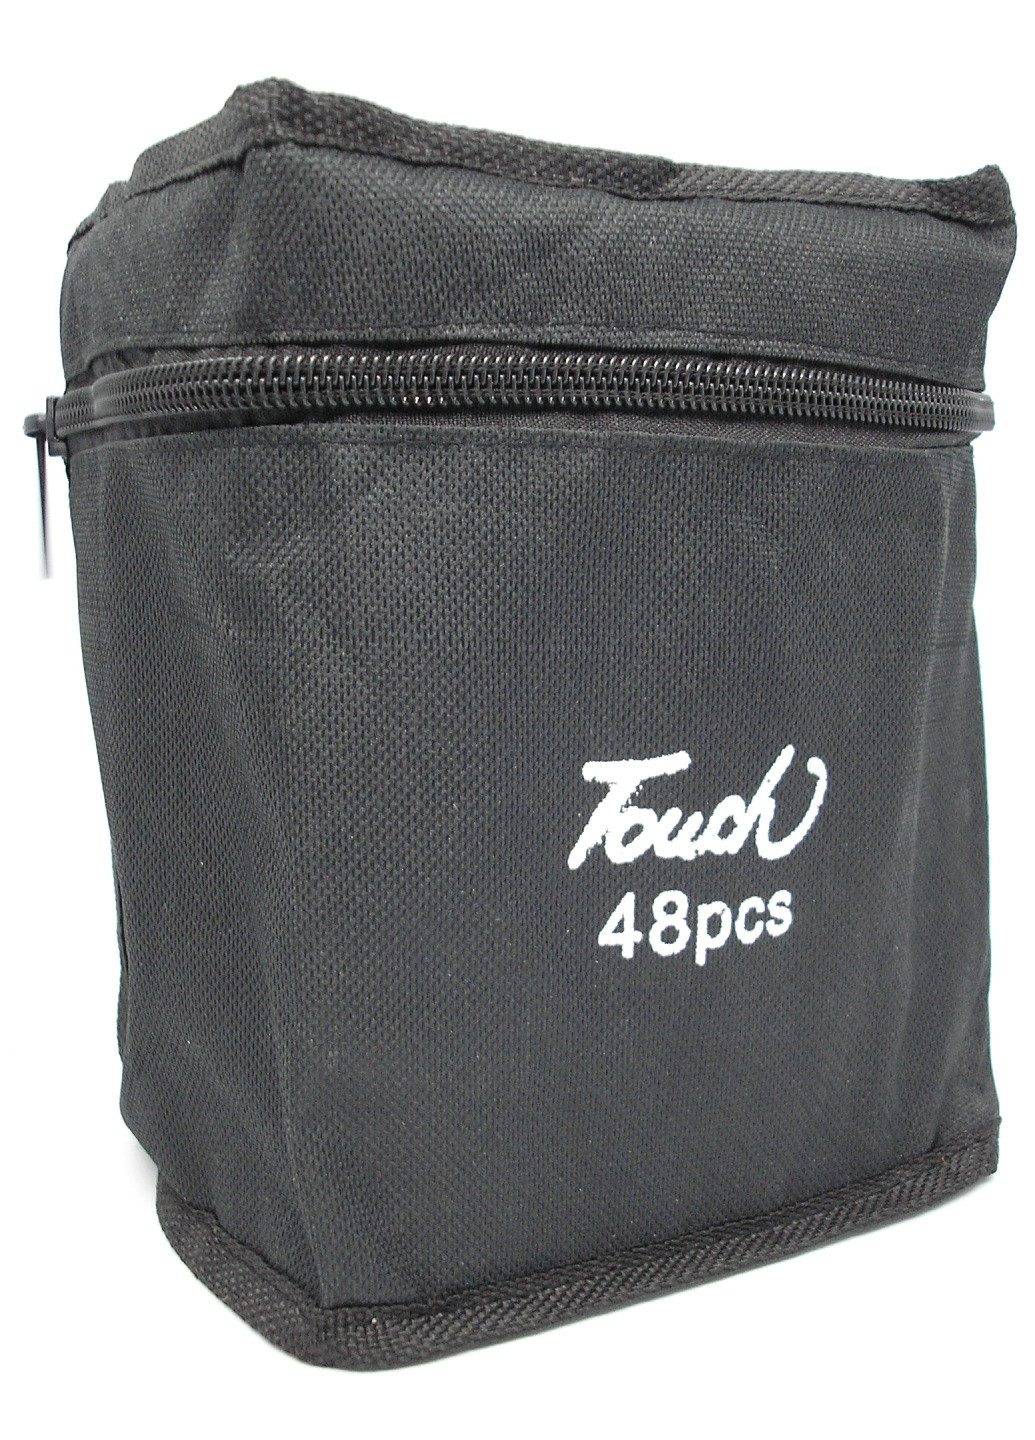 Скетч маркеры двухсторонние 48 шт фломастеры спиртовые набор в сумке по номерам Touch (259505008)